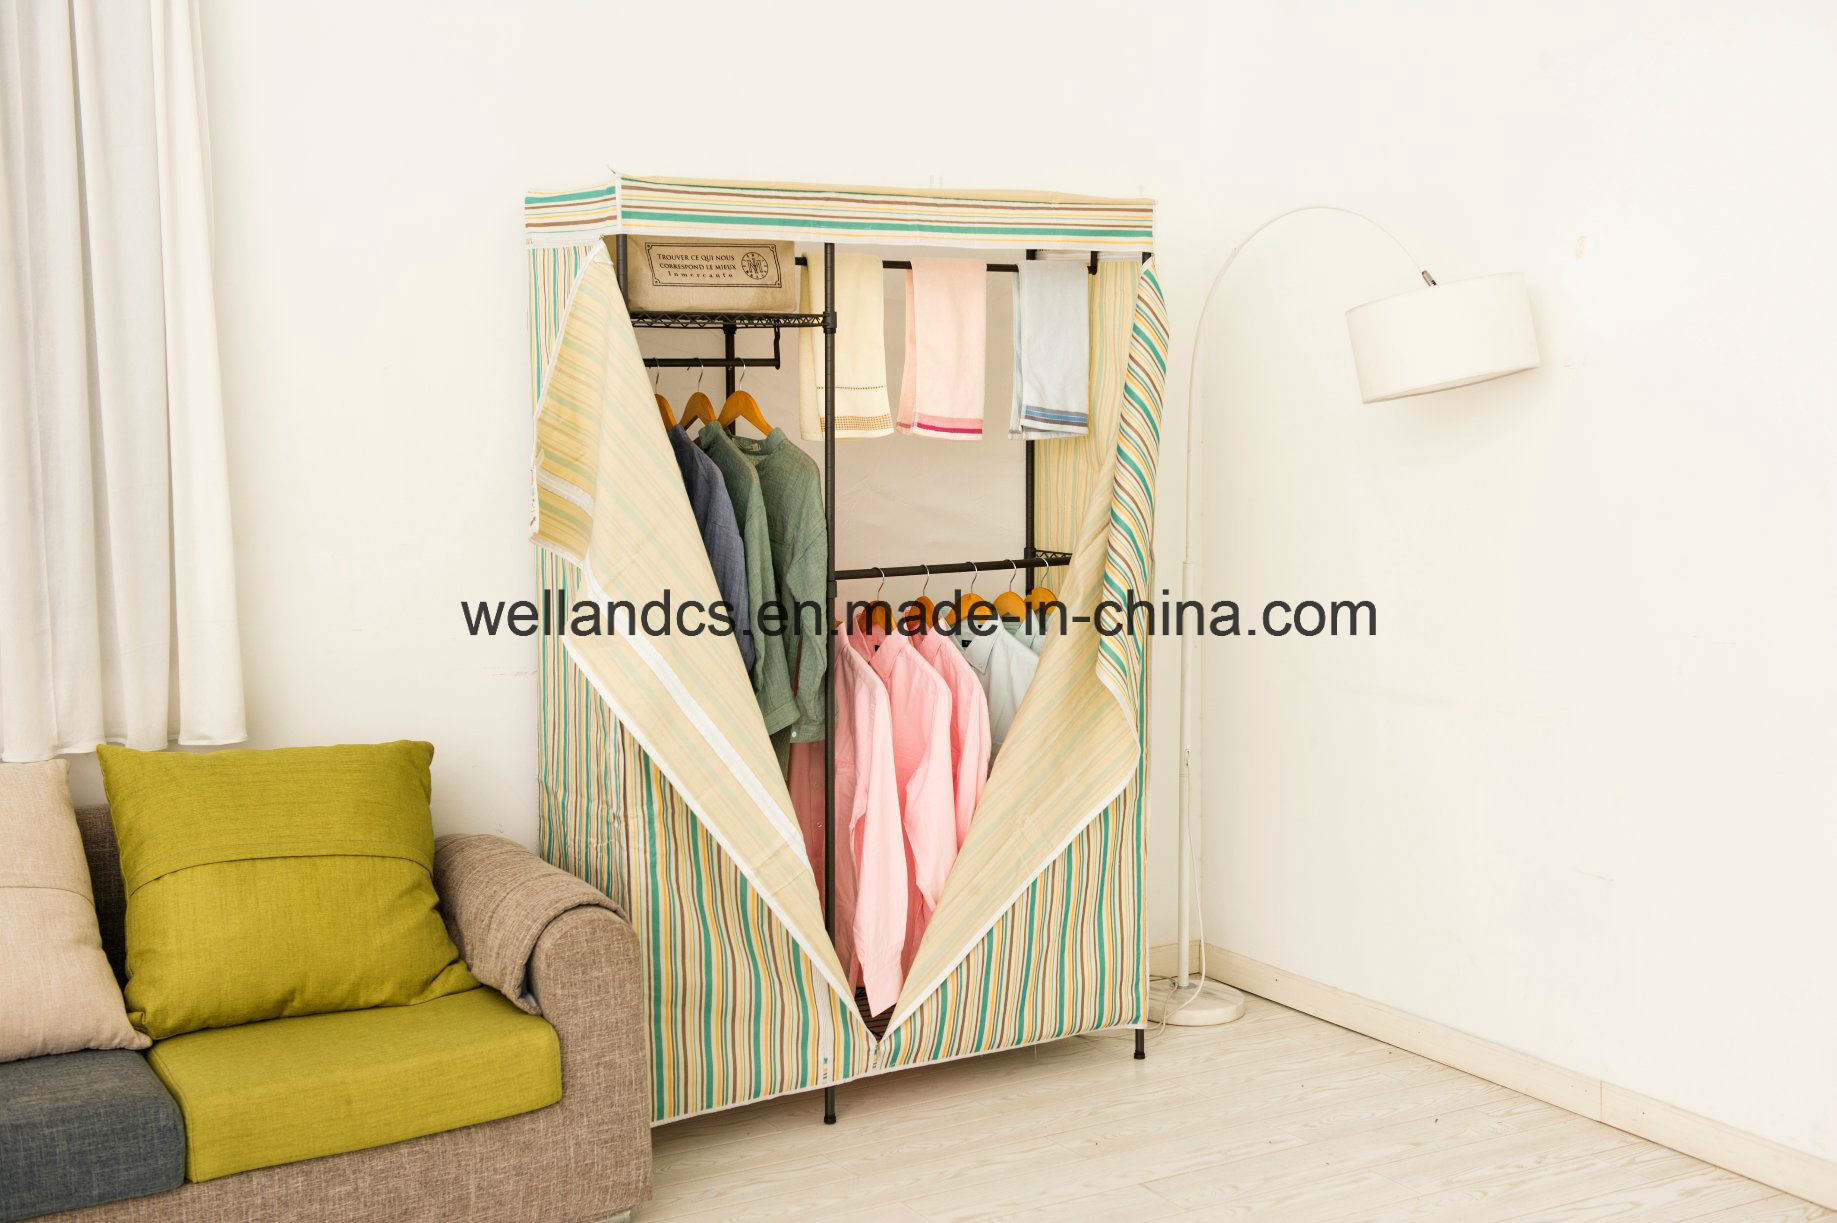 /proimages/2f0j00smrEUaWfRukt/cheap-canvas-metal-wardrobe-garment-rack-for-bedroom-clothes-storage.jpg